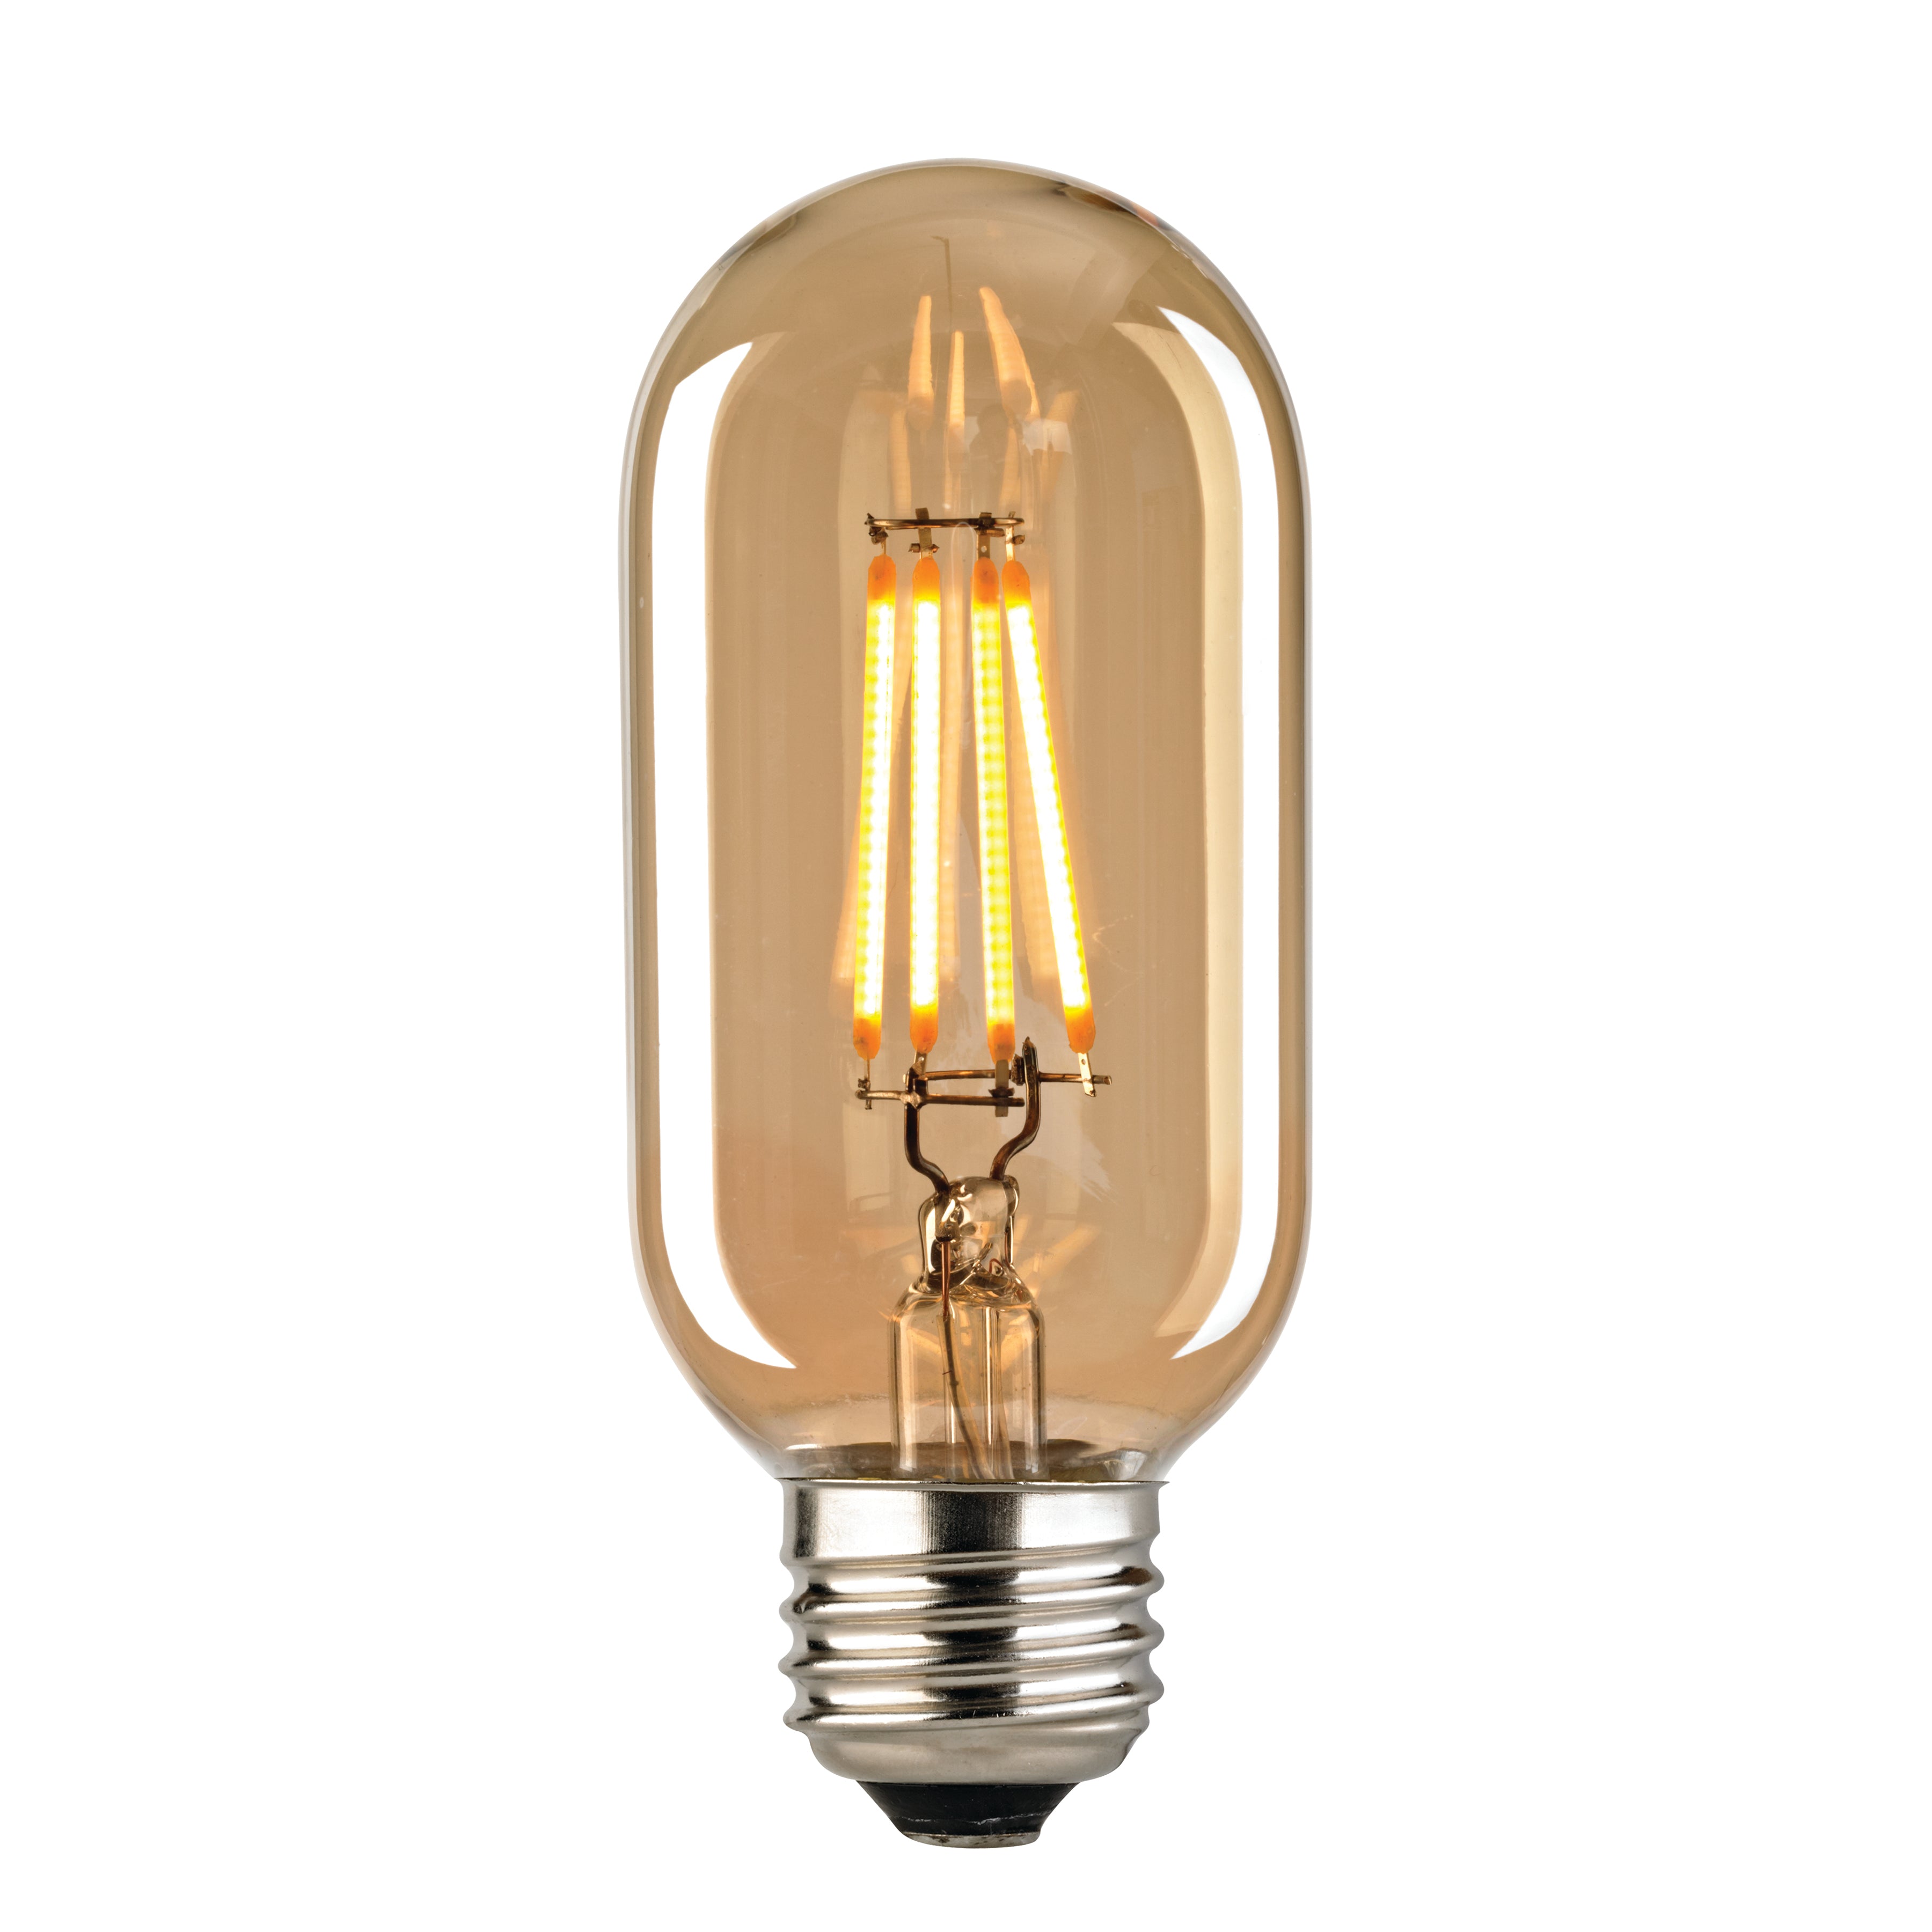 LED Medium Bulb - Shape T14, Base E26, 2700K - Light Gold Tint